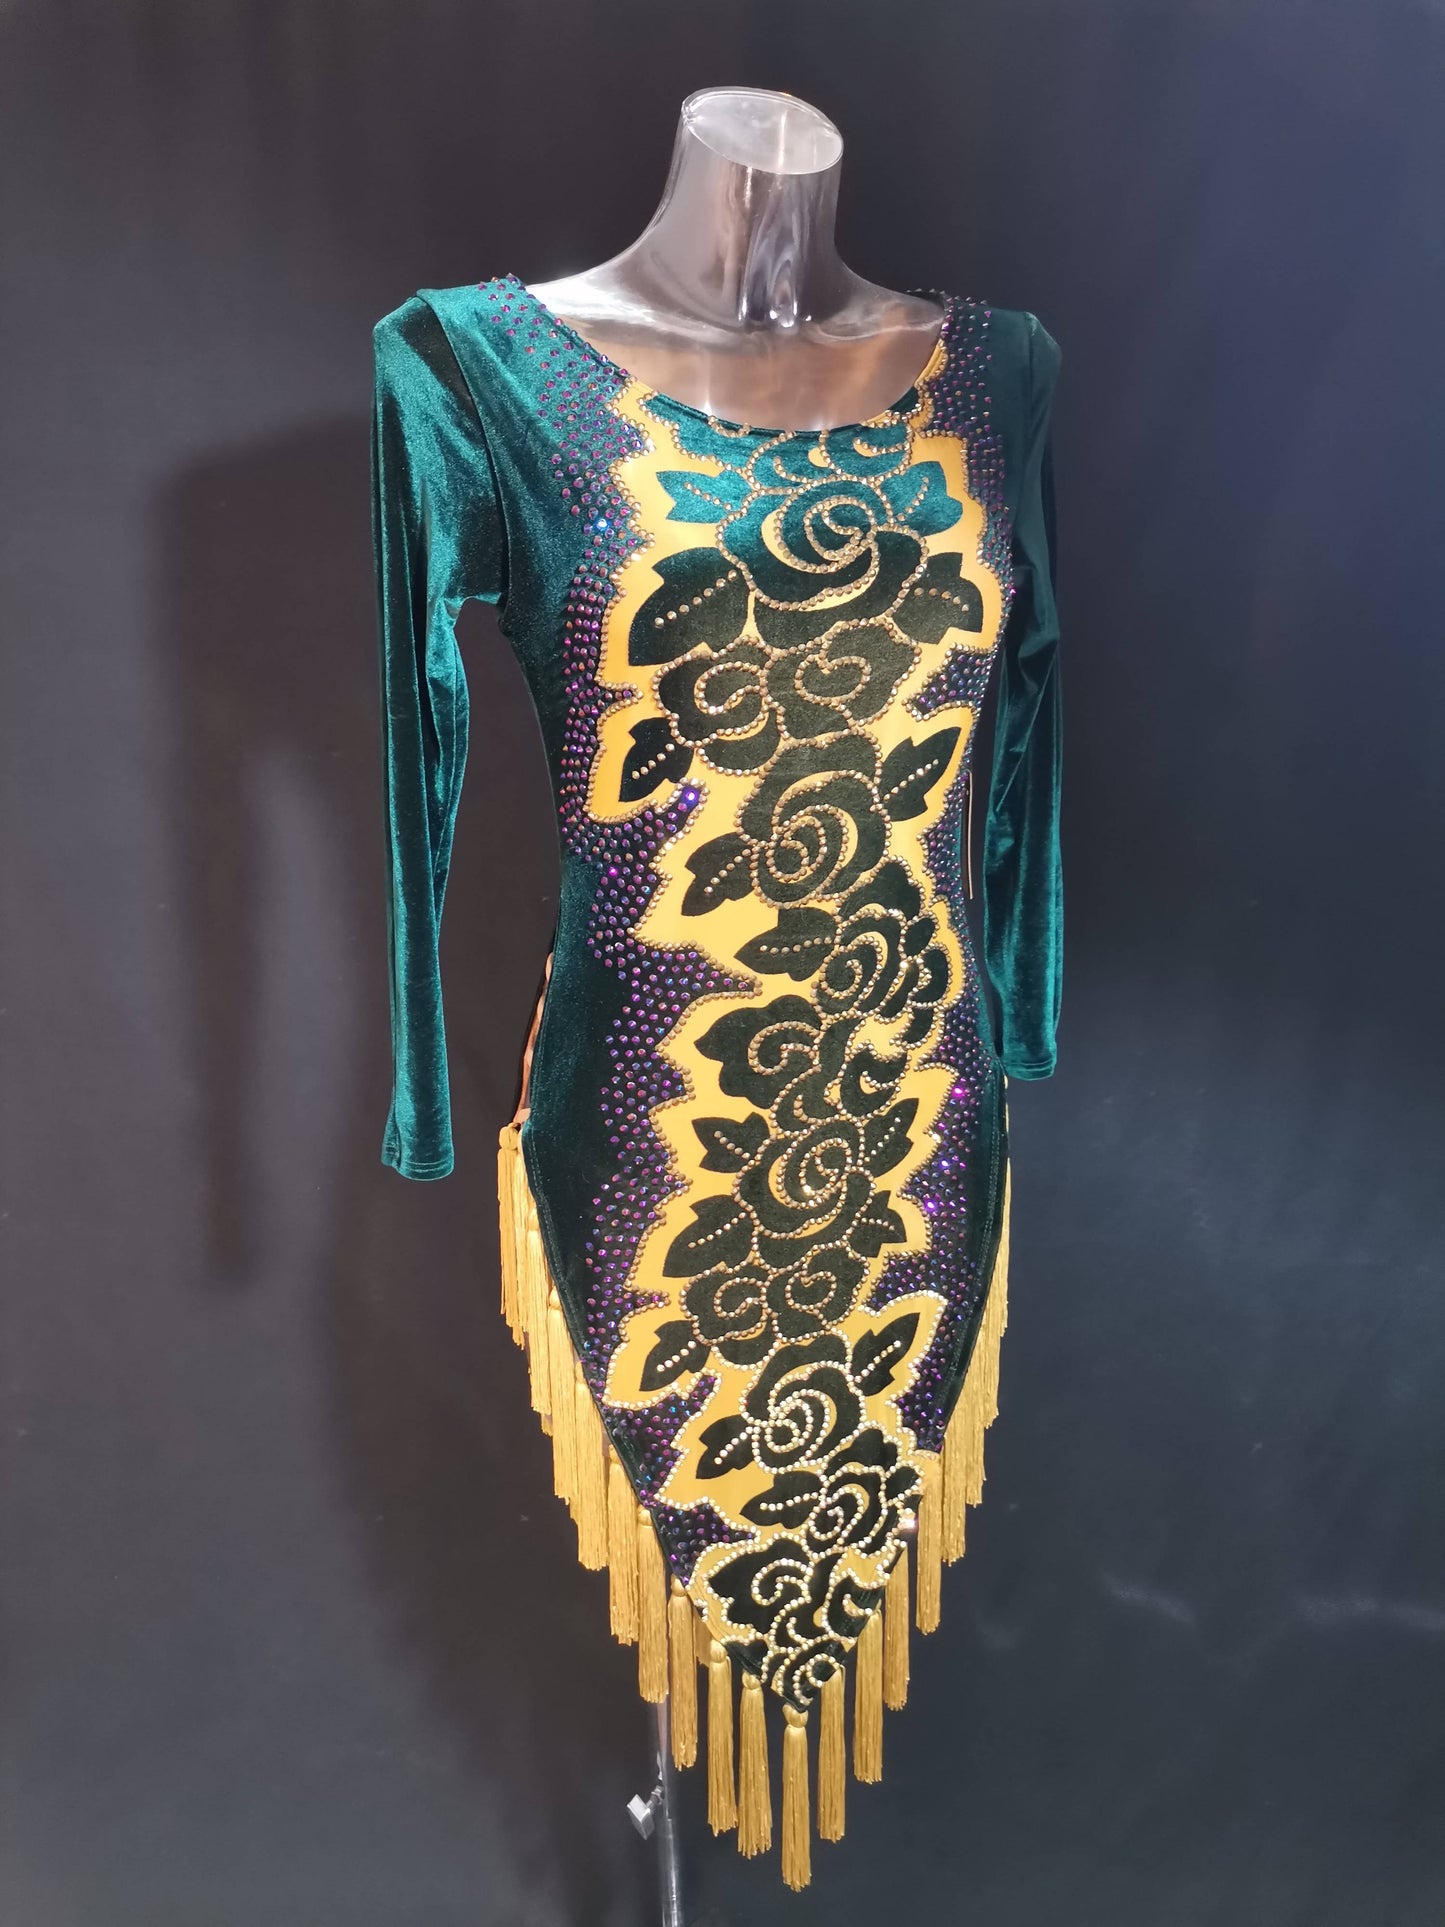 Green Velvet Latin Dress (latin dress for sale, dancesport, rhythm)